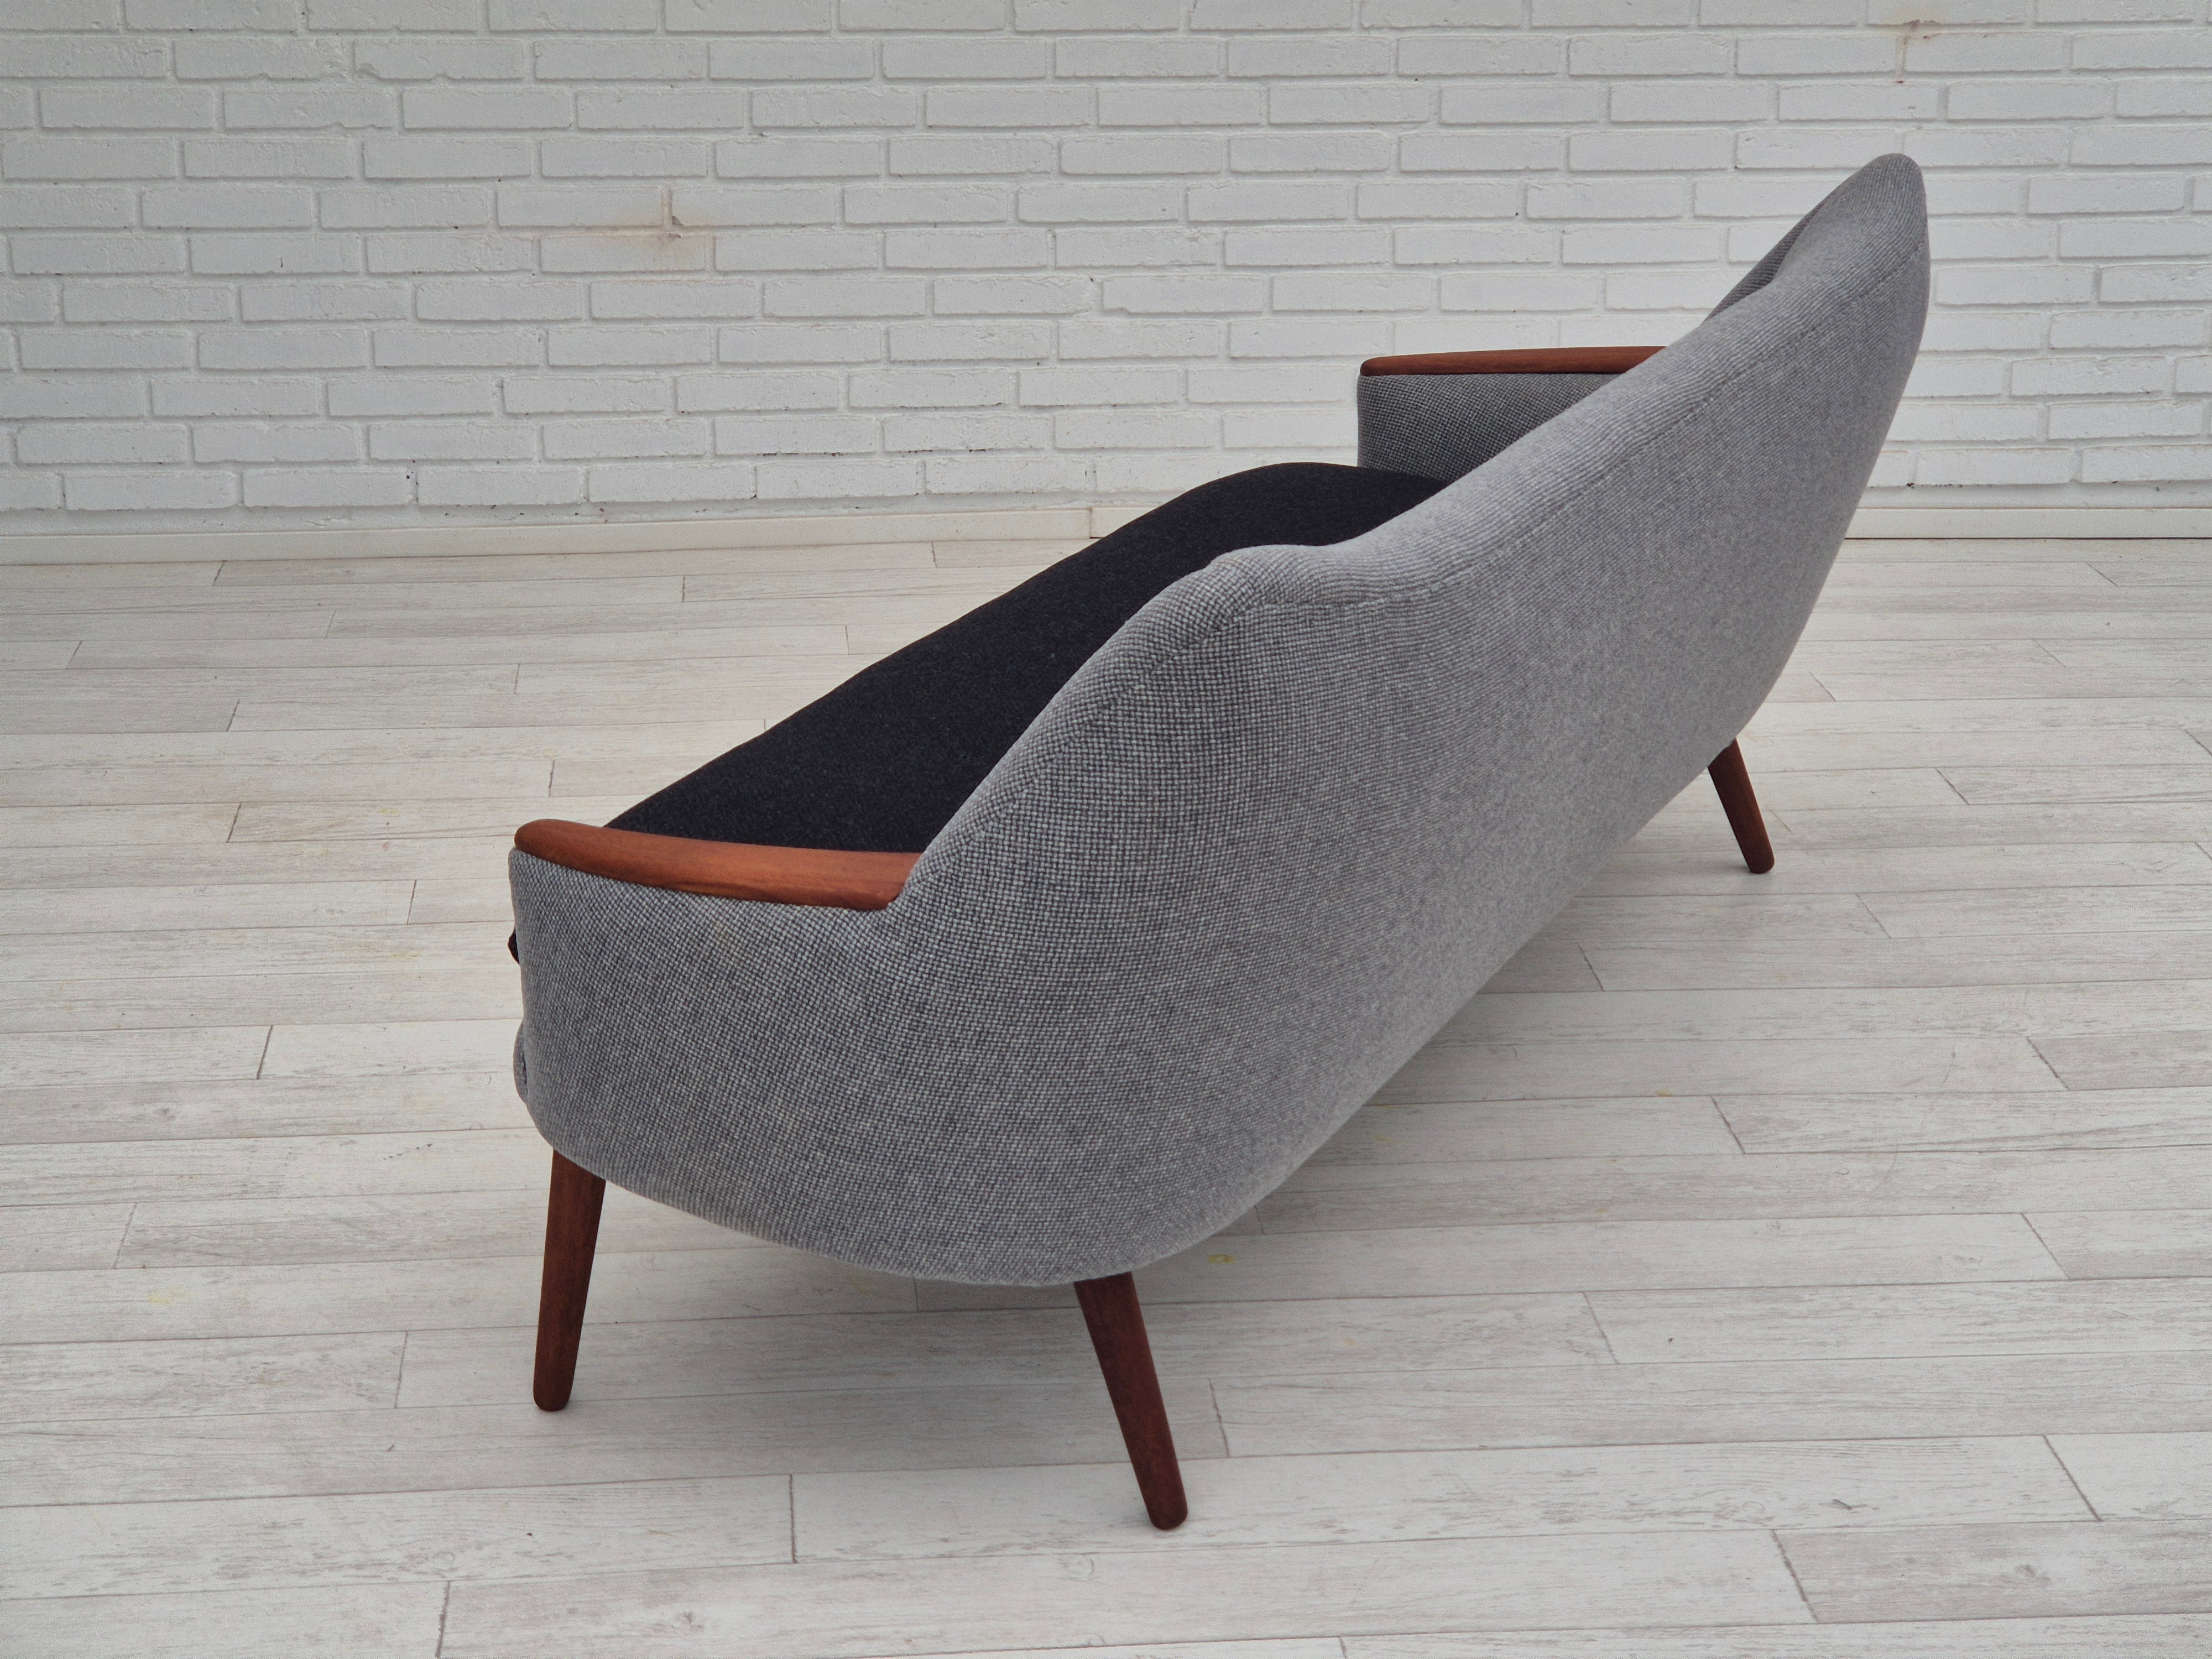 1960erne, Dansk sofa af Kurt Østervig model 58, total renoveret, møbeluld, teaktræ.